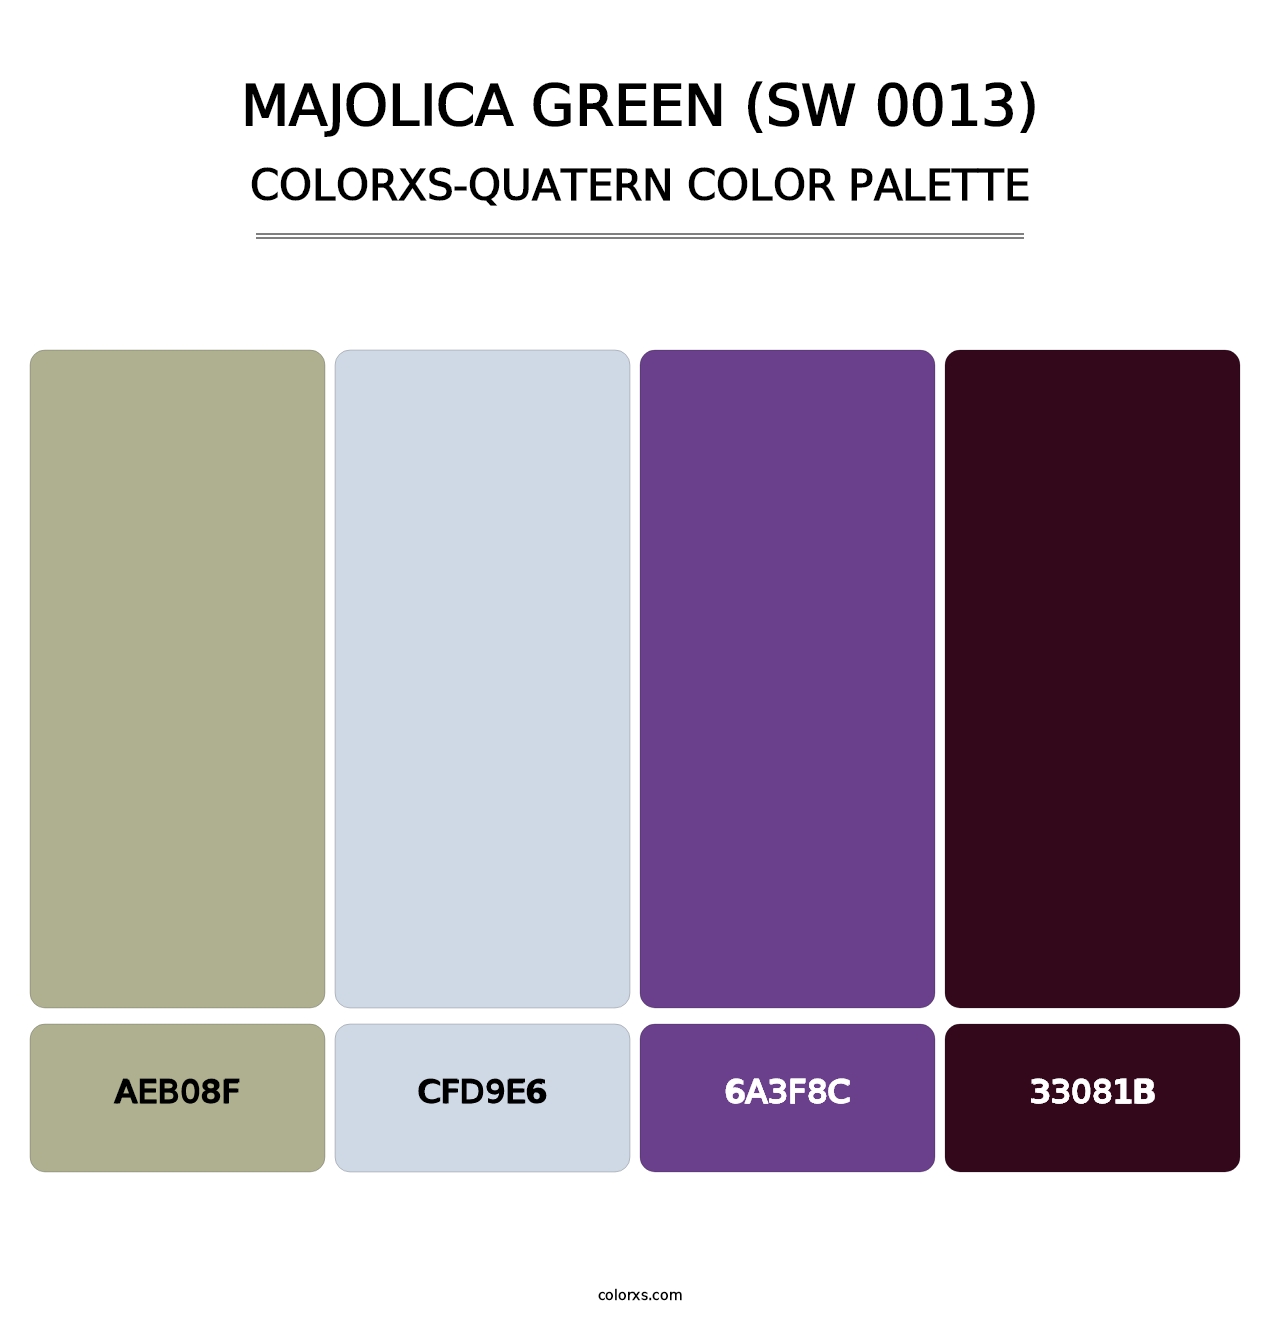 Majolica Green (SW 0013) - Colorxs Quatern Palette